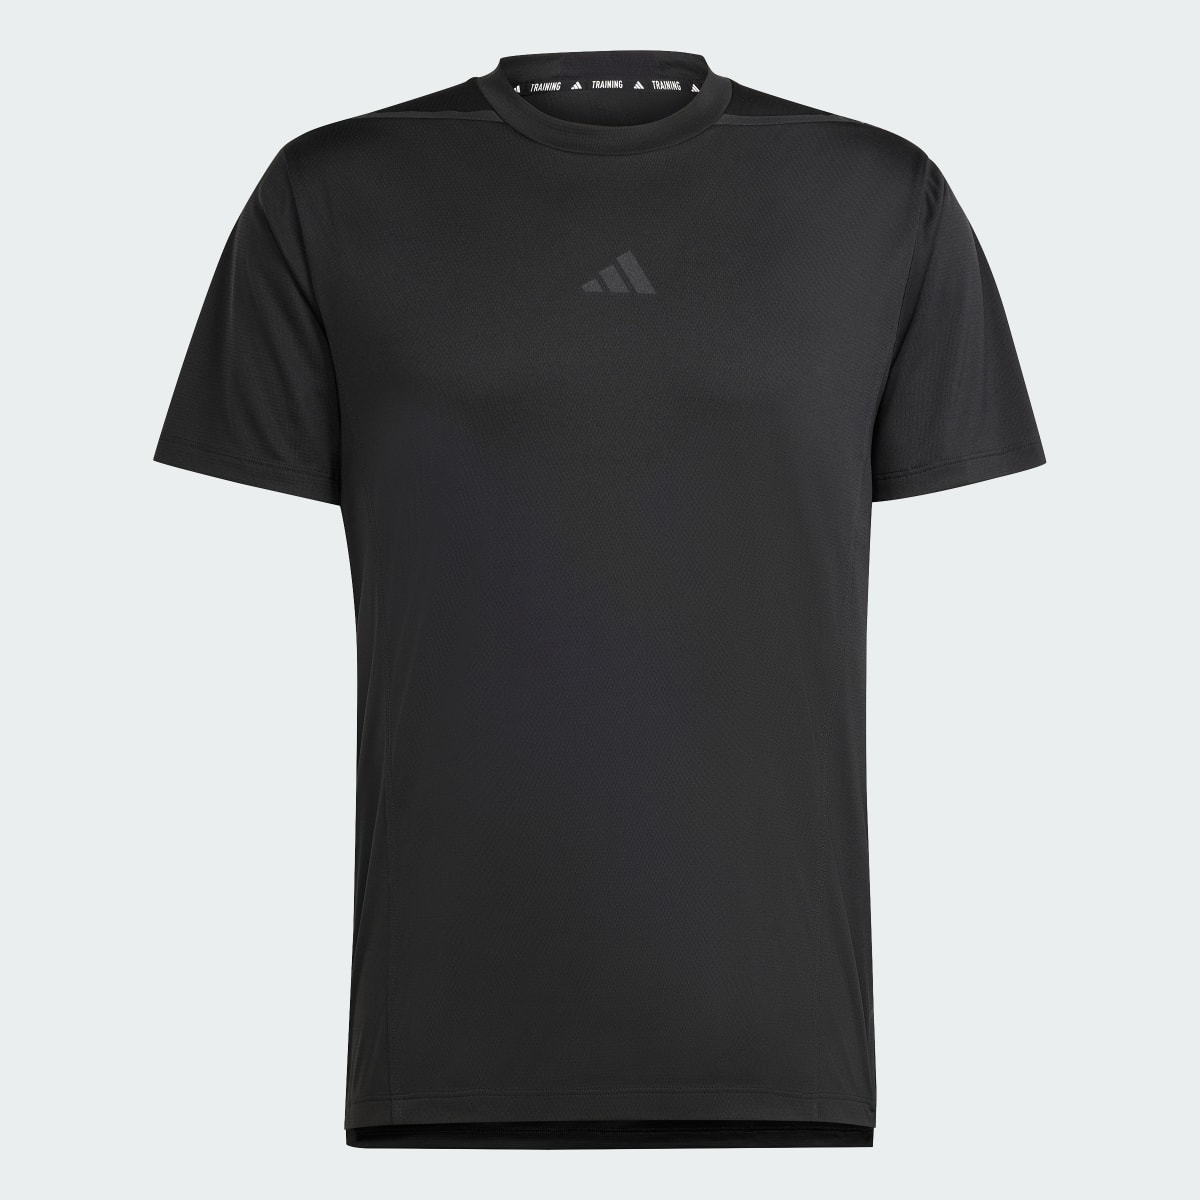 Adidas T-shirt de Treino Adistrong Designed for Training. 6